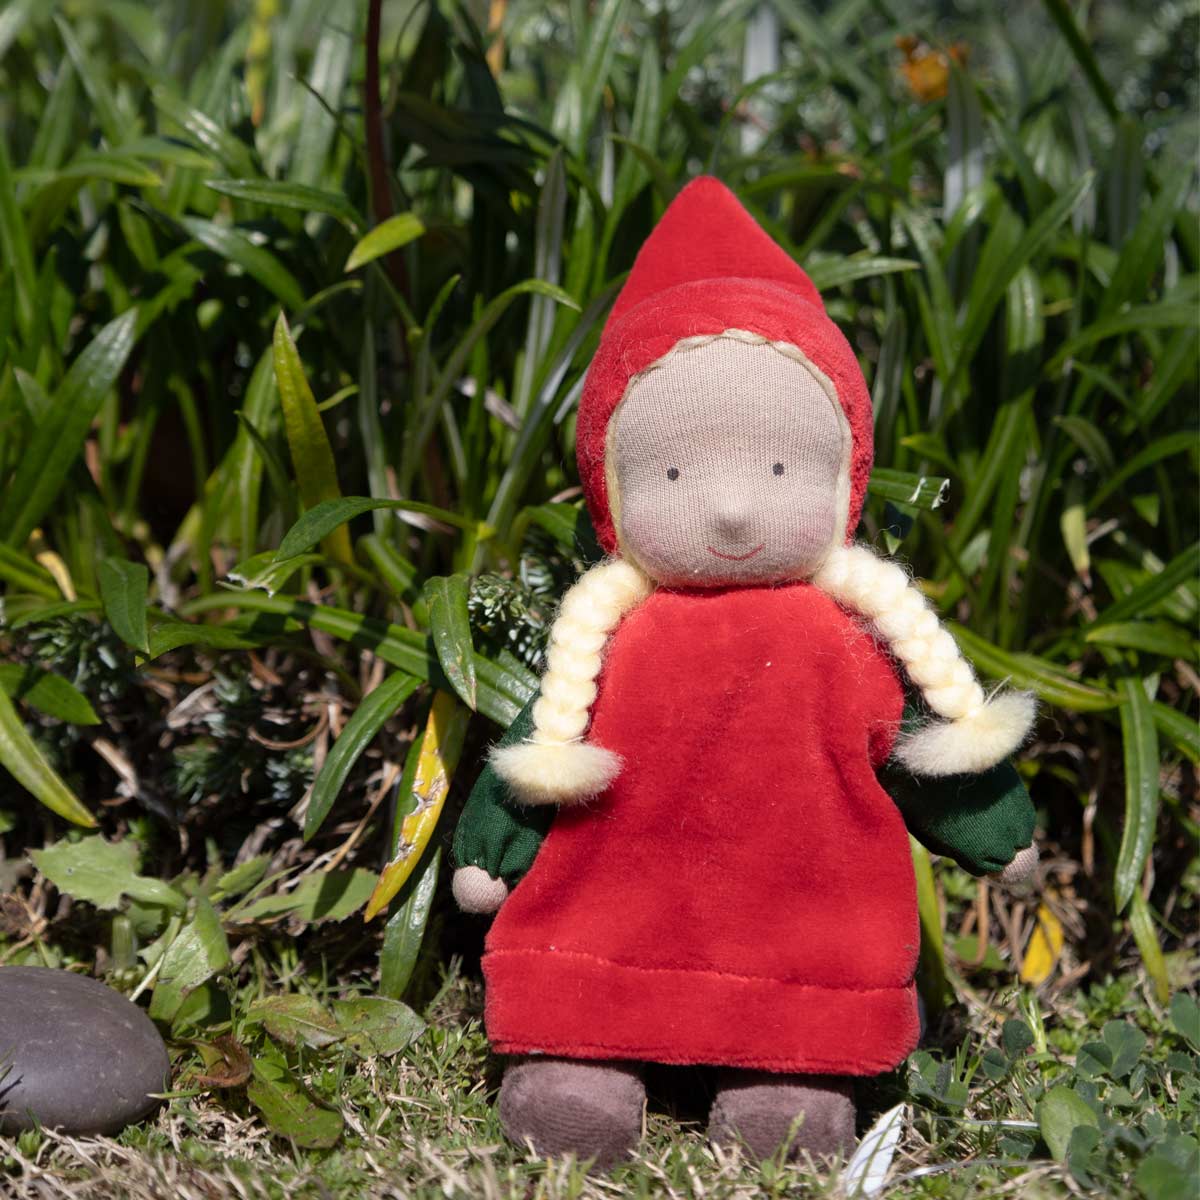 Evi Doll Noelle Christmas Gnome Girl